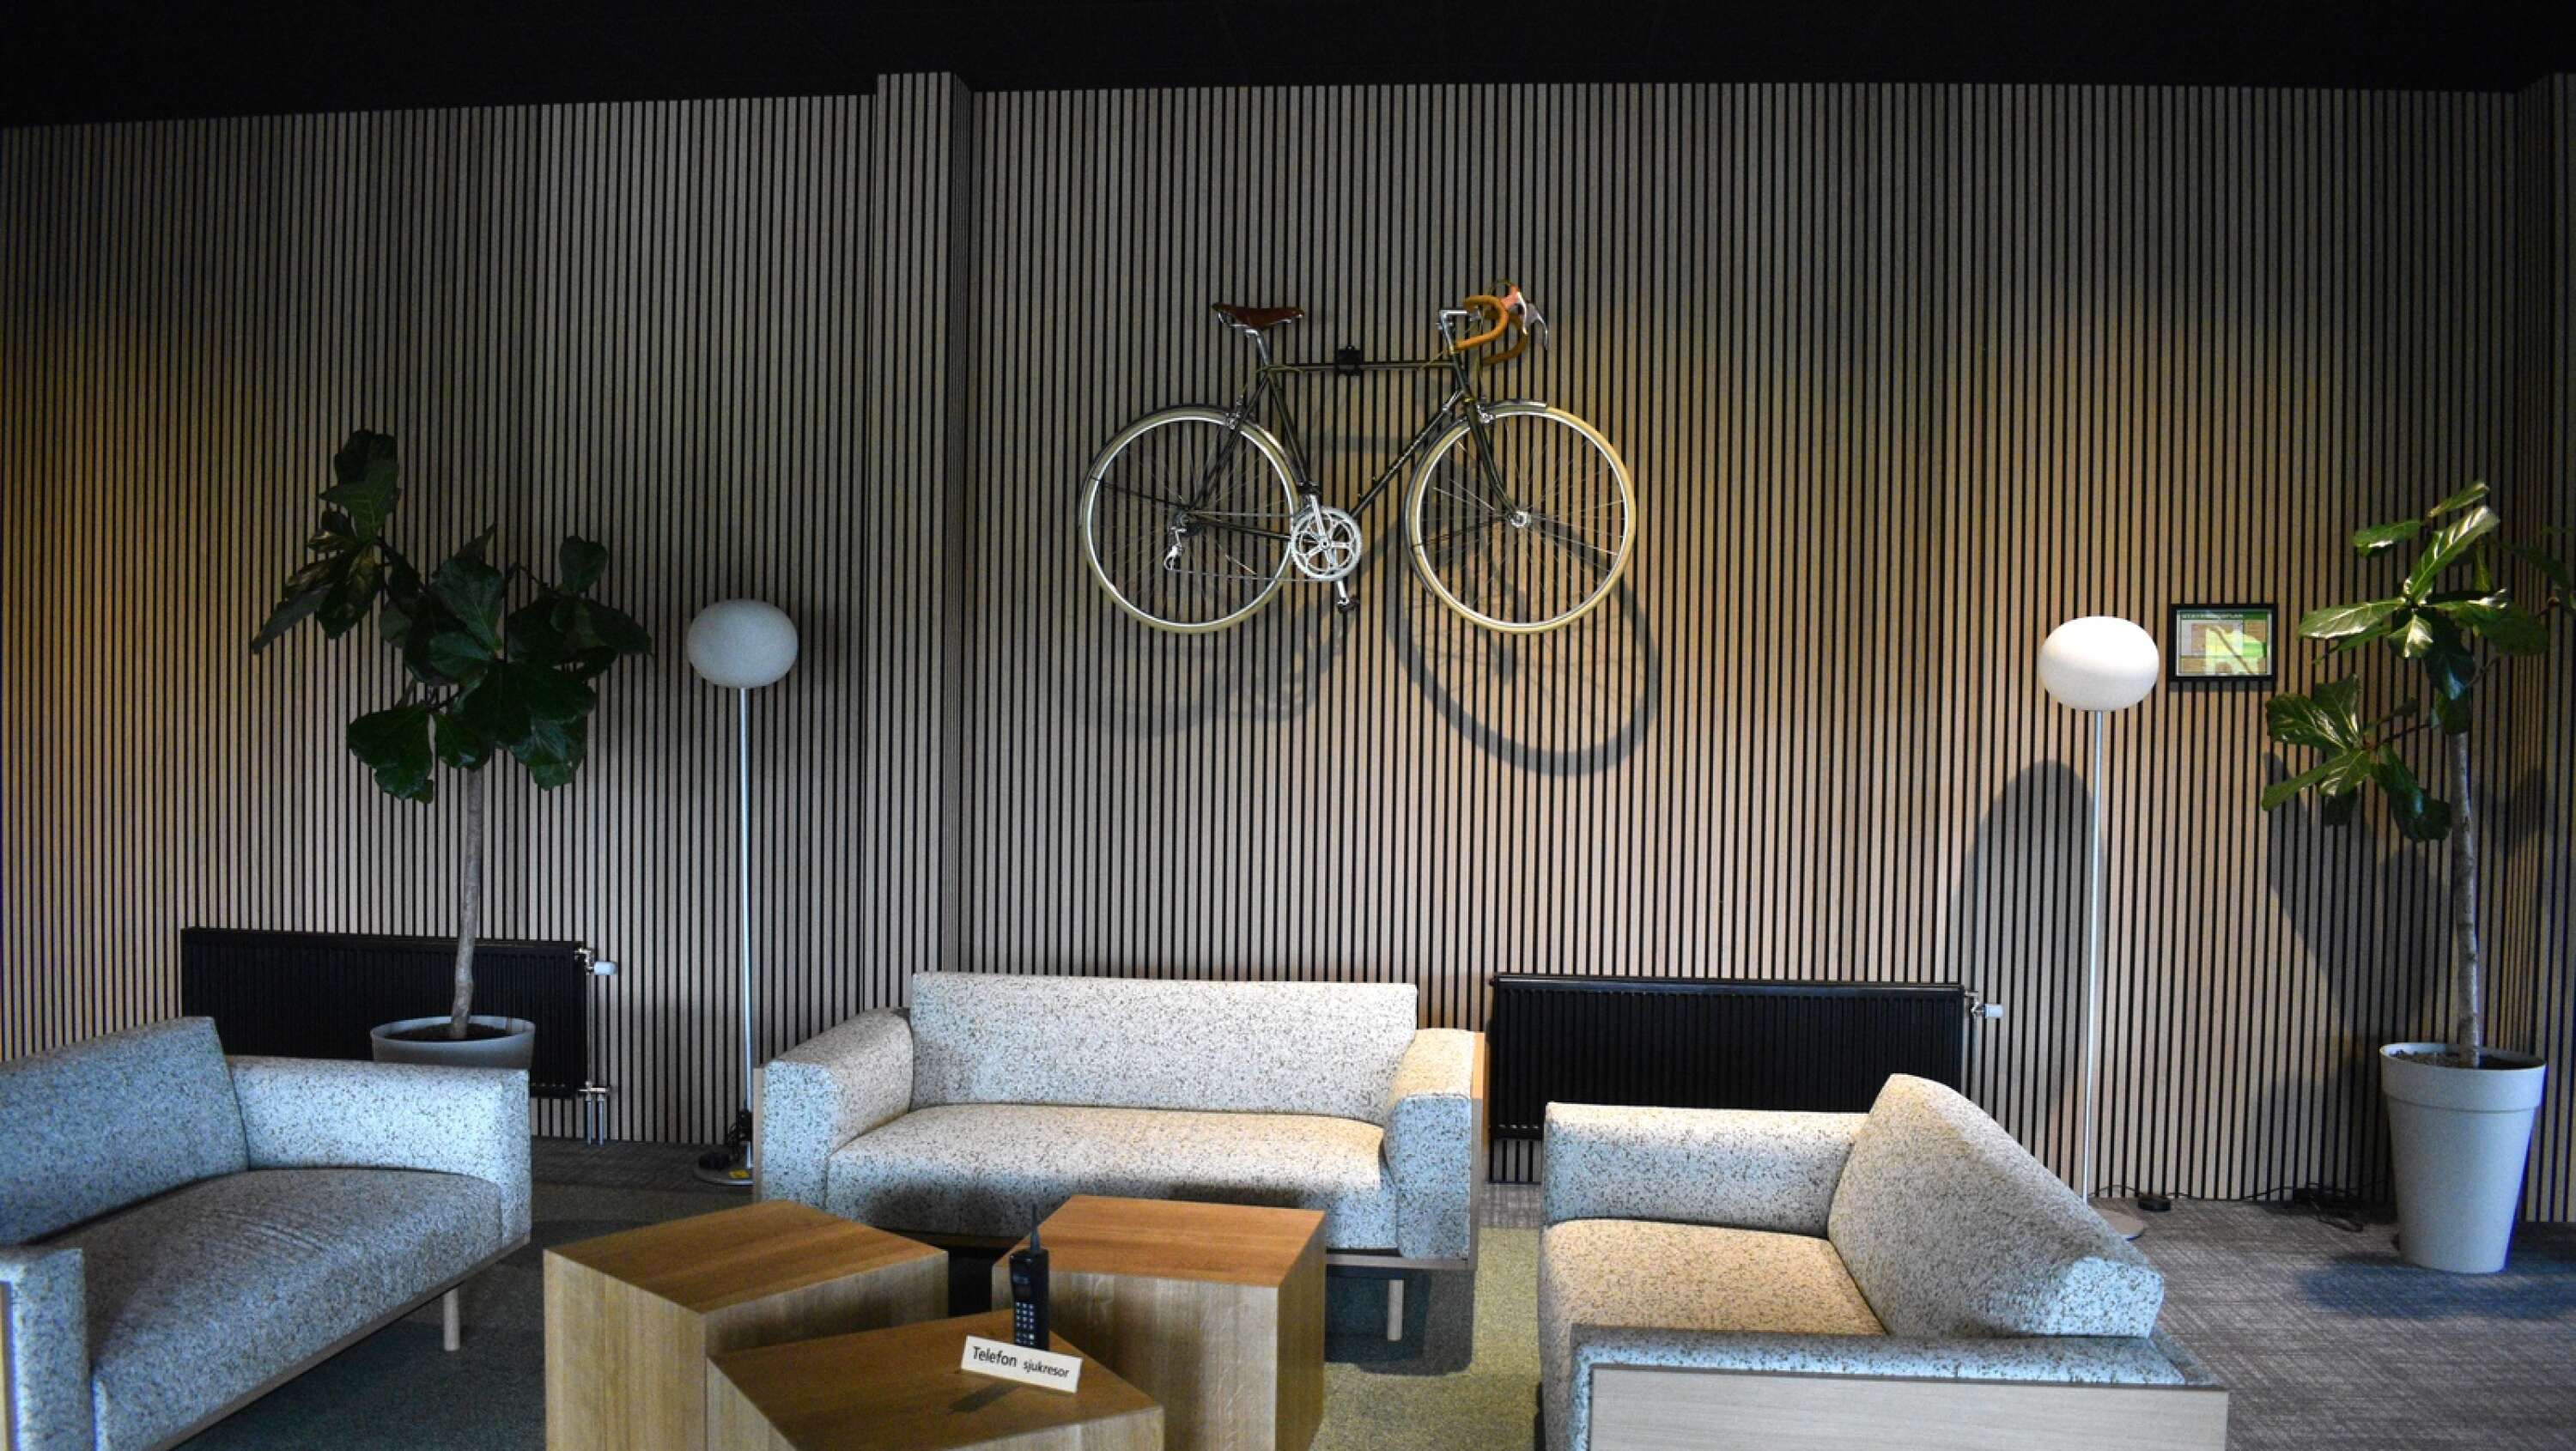 Cykeln som hänger på väggen är en italiensk tävlingscykel från 1975, samma år som de båda ägarna till företaget är födda.